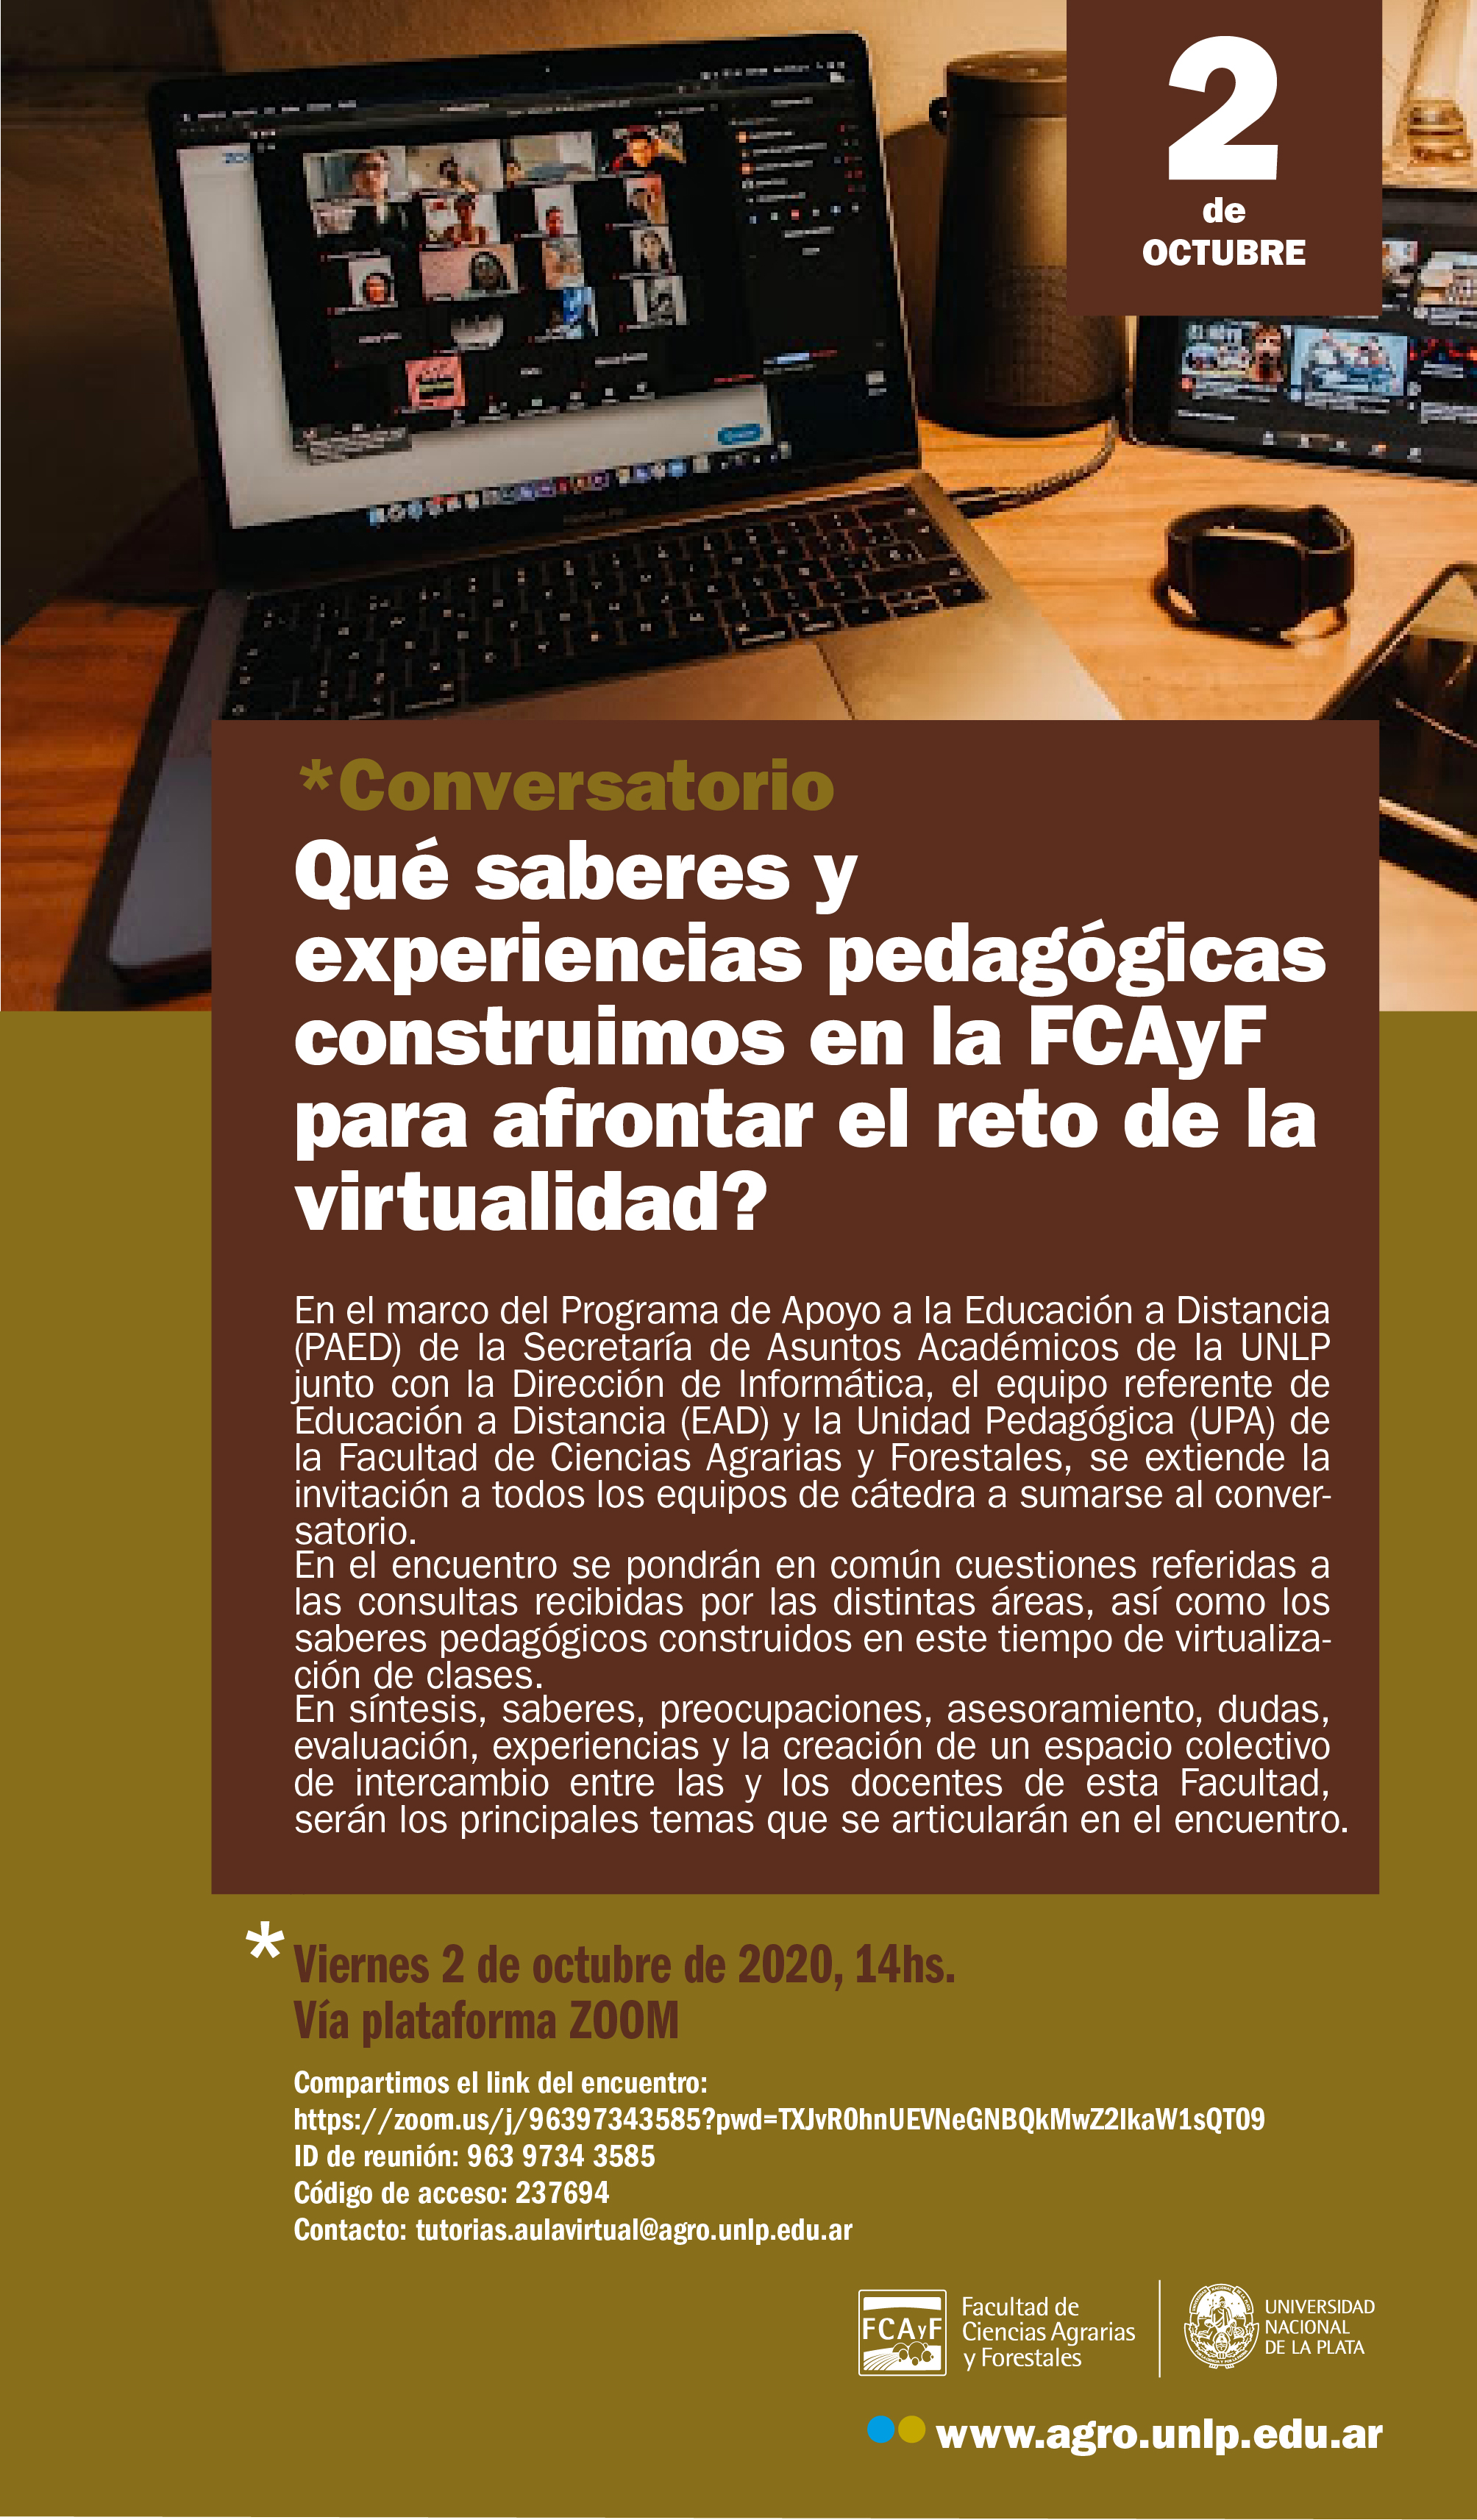  Conversatorio: ¿Qué saberes y experiencias pedagógicas construimos en la FCAyF para afrontar el reto de  la virtualidad?